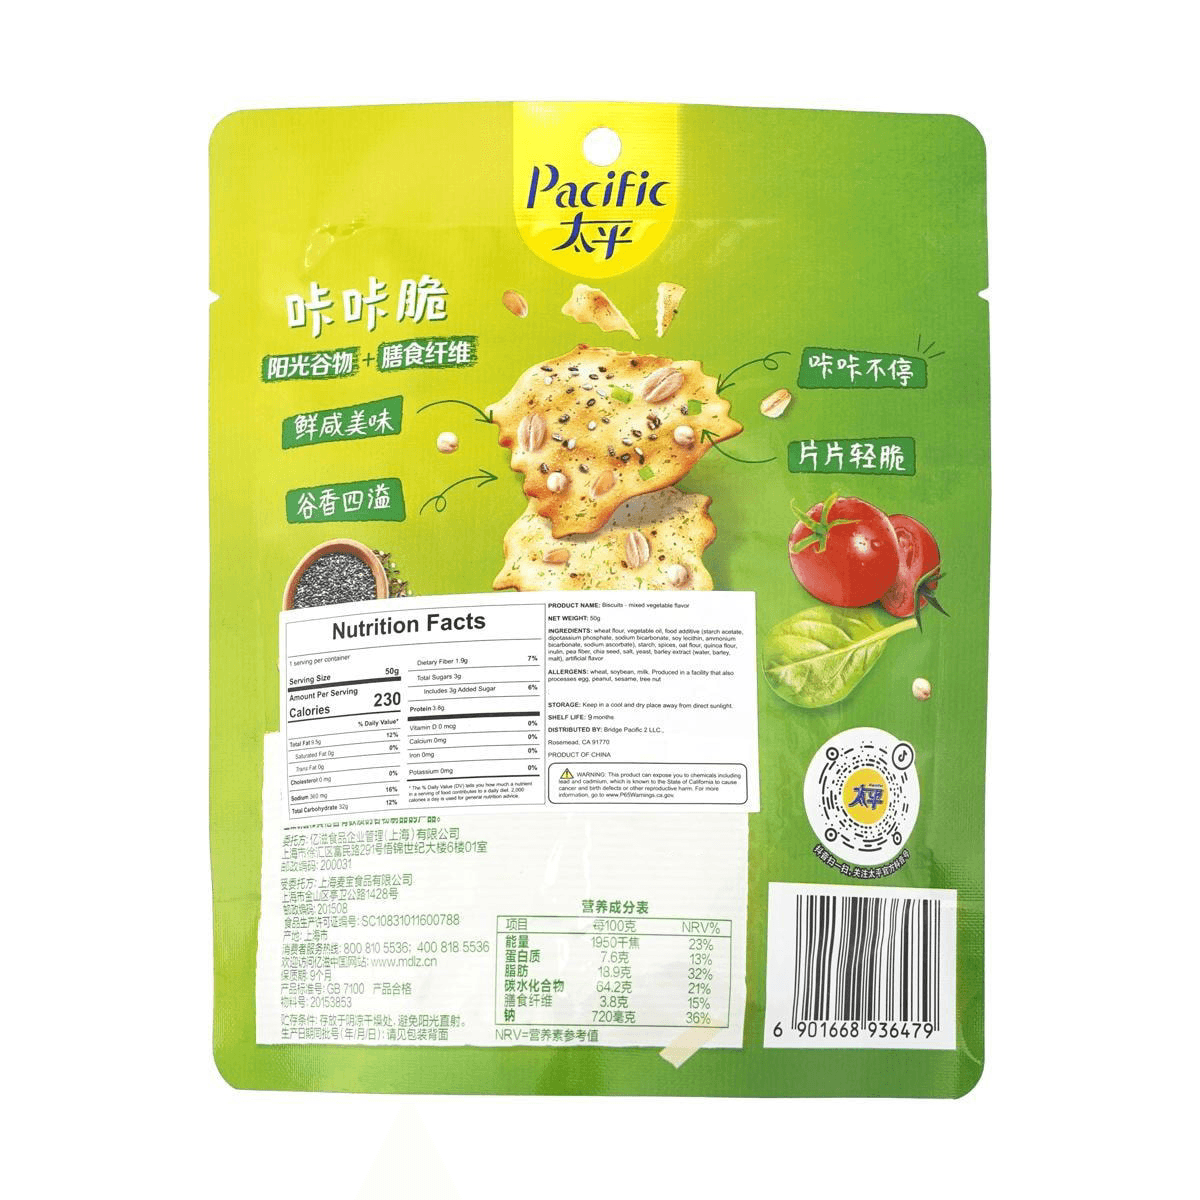 太平 咔咔脆 发酵饼干 混合蔬菜味 50g